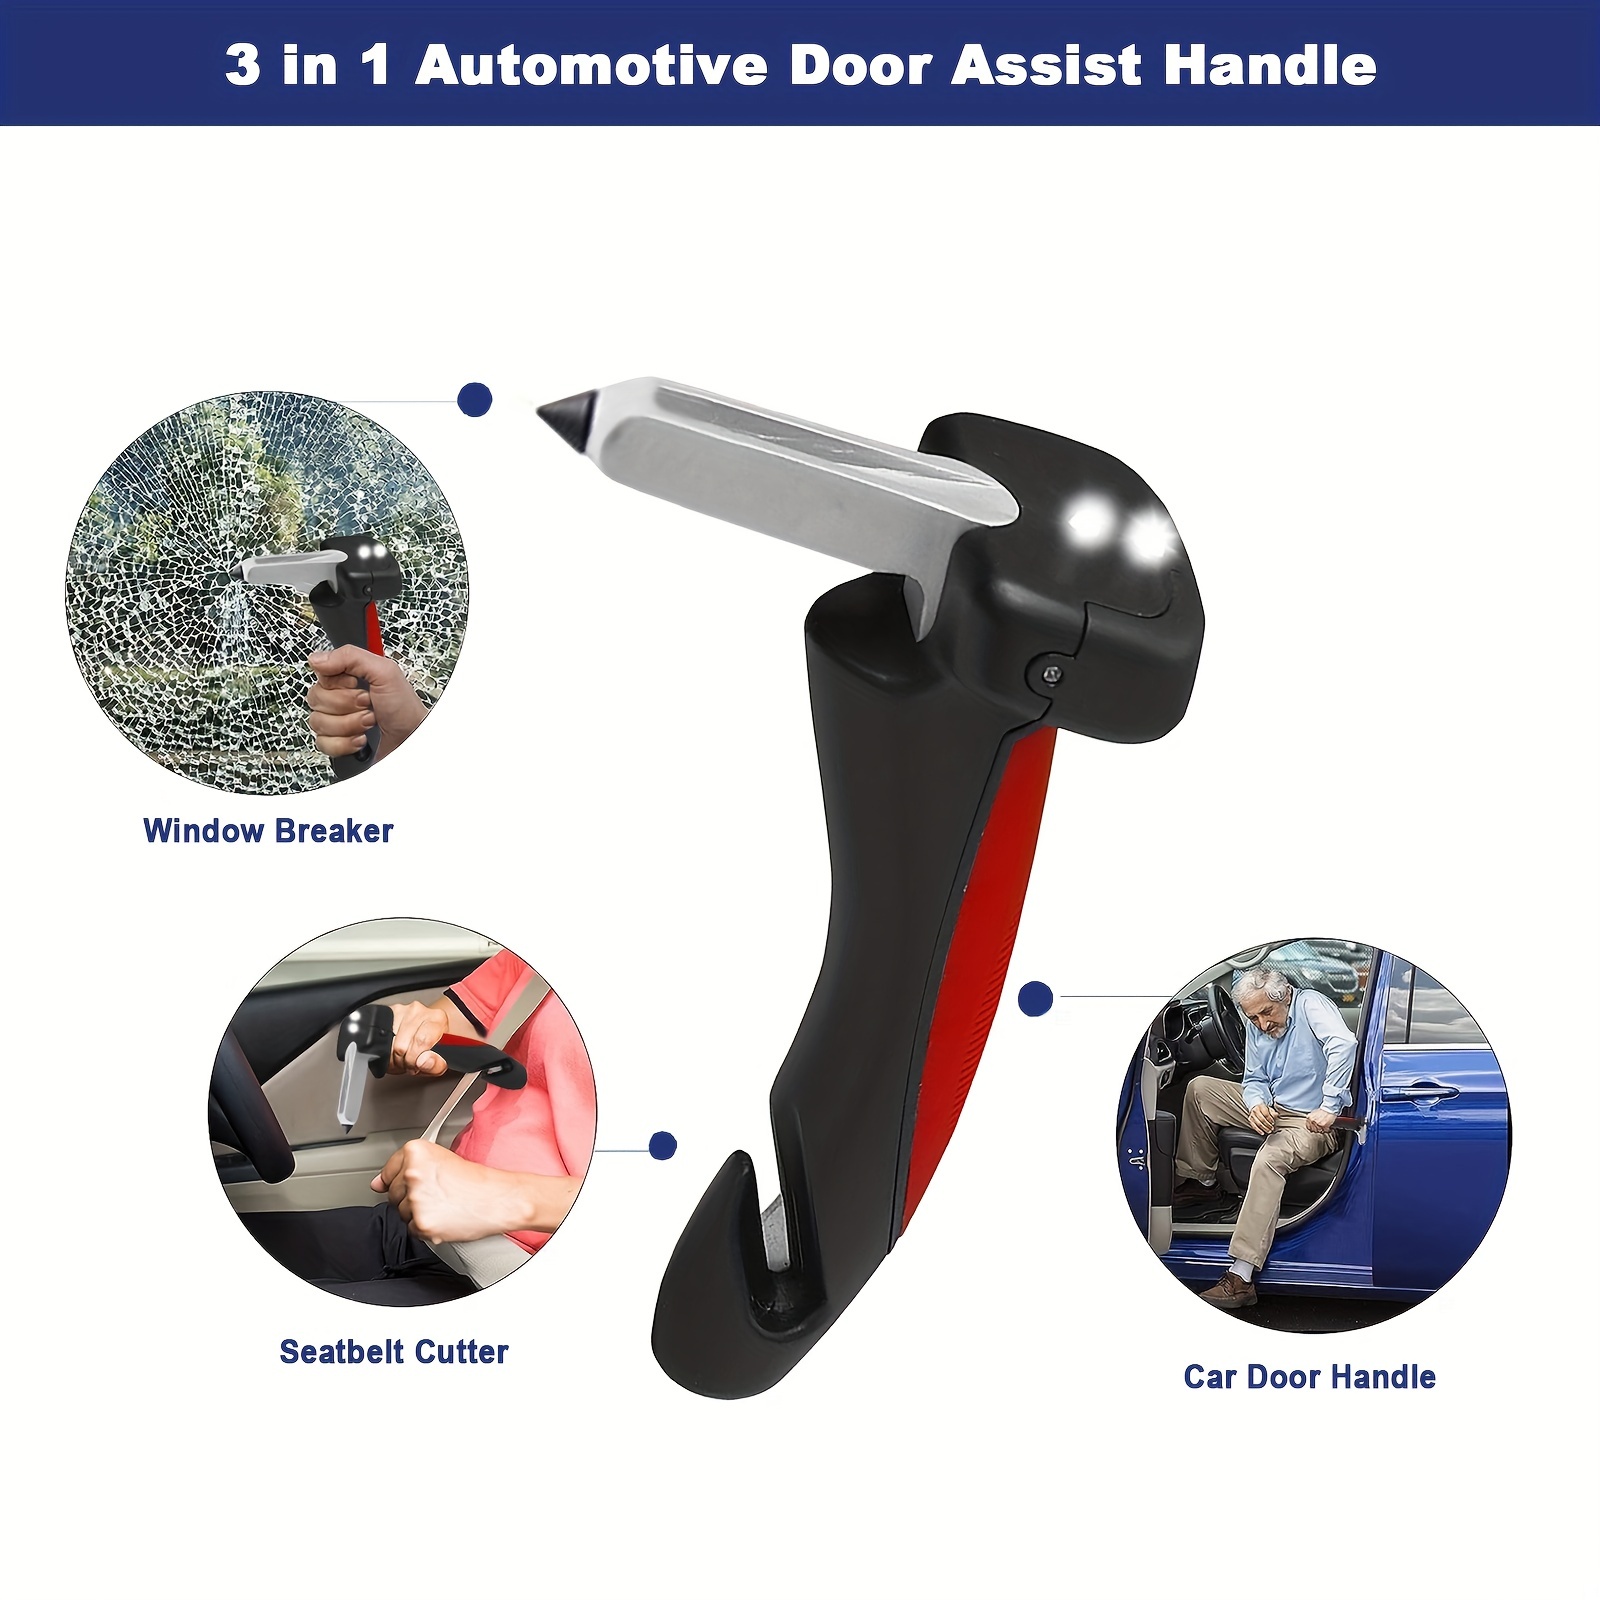 3 In 1 Automotive Door Assist Handle, Car Handle Assist For Elderly And  Handicapped, Seatbelt Cutter, Window Breaker, Car Door Handle For Seniors